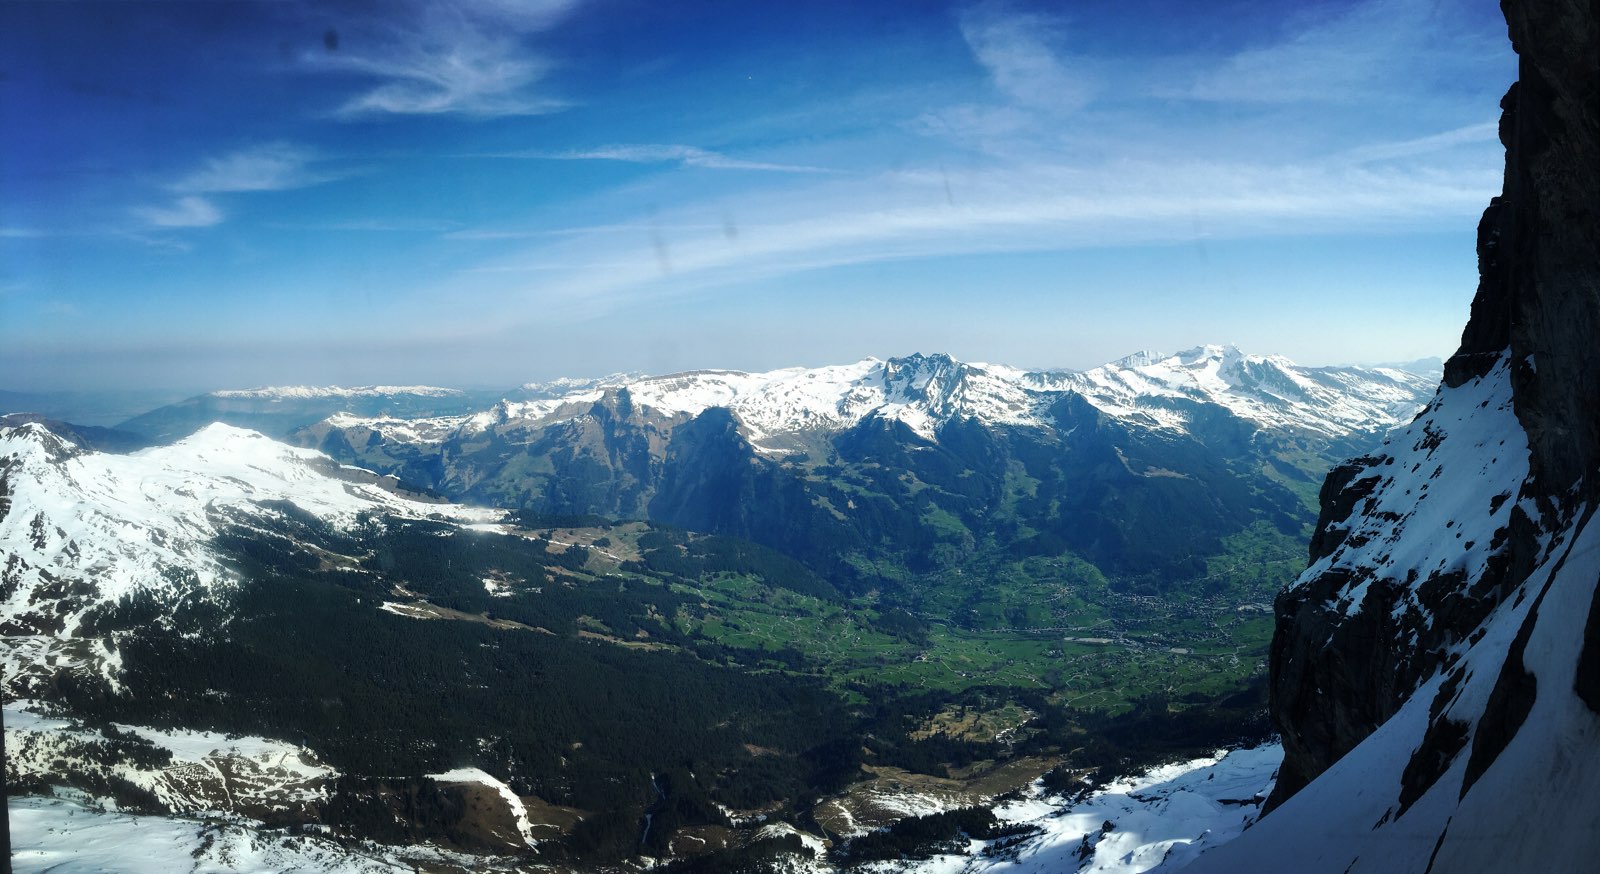 欧洲之脊——少女峰，也算是个不可不到的景点。第二次来了，一样的景却能有